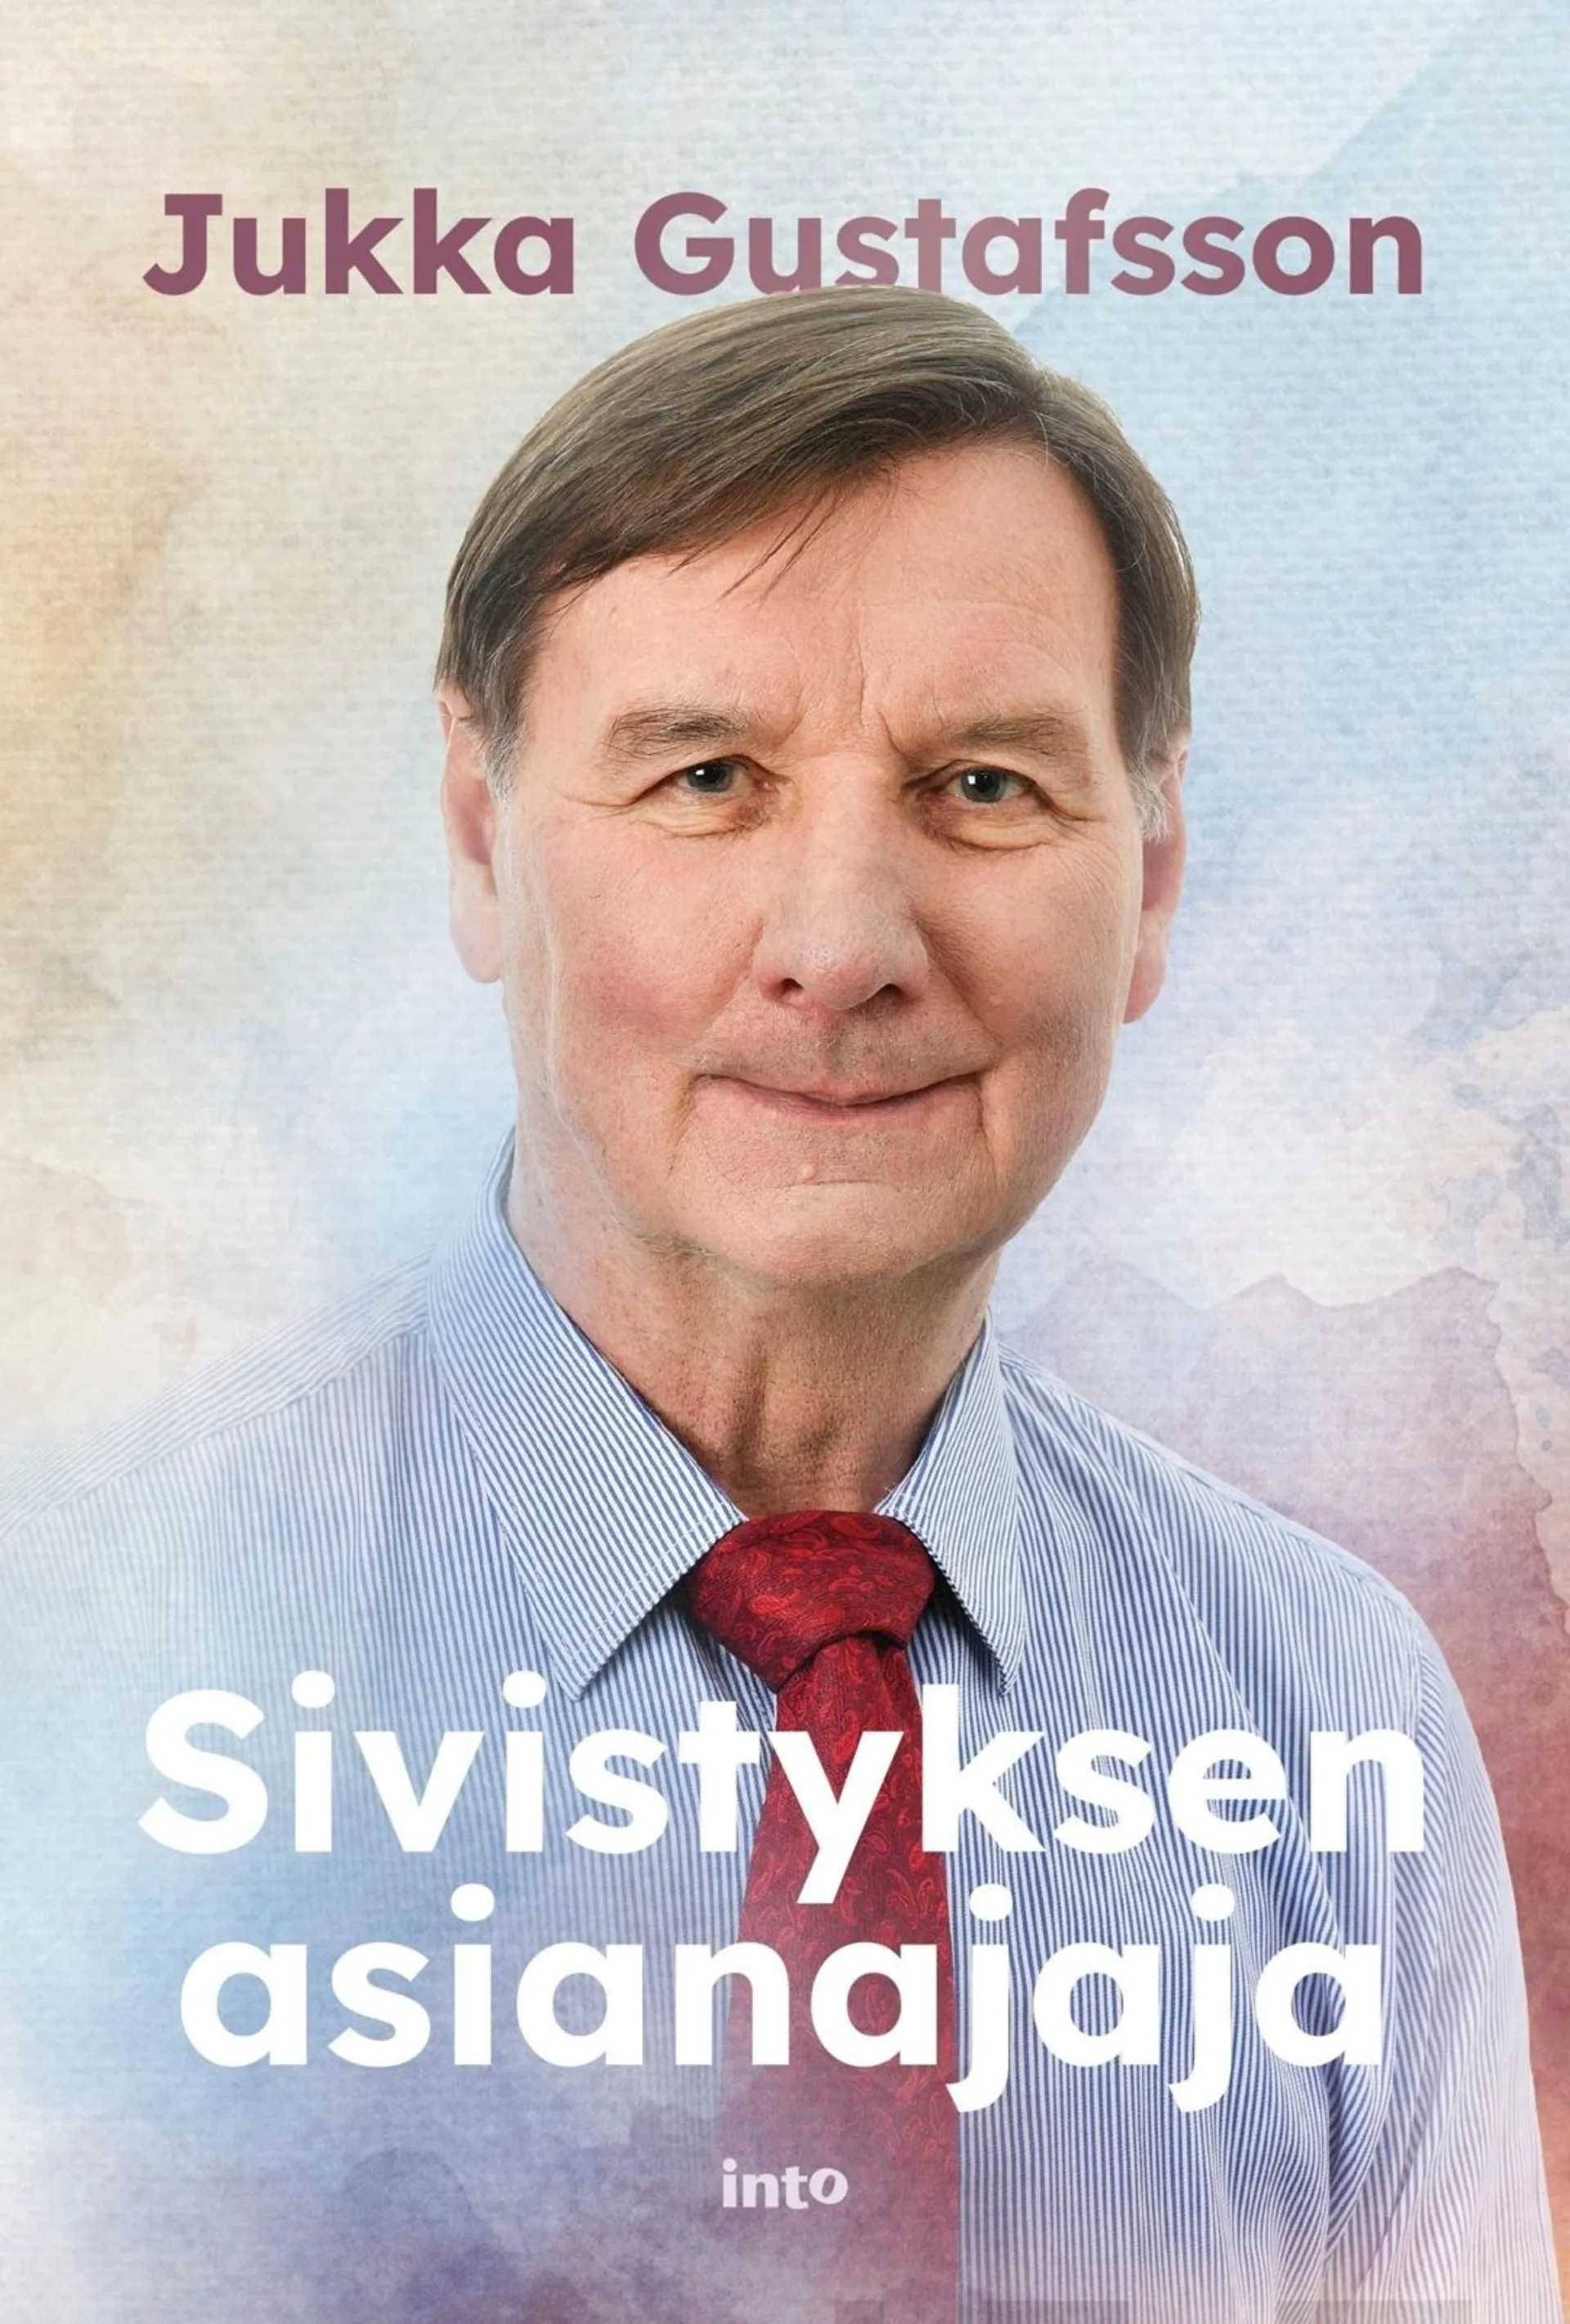 Gustafsson, Sivistyksen asianajaja